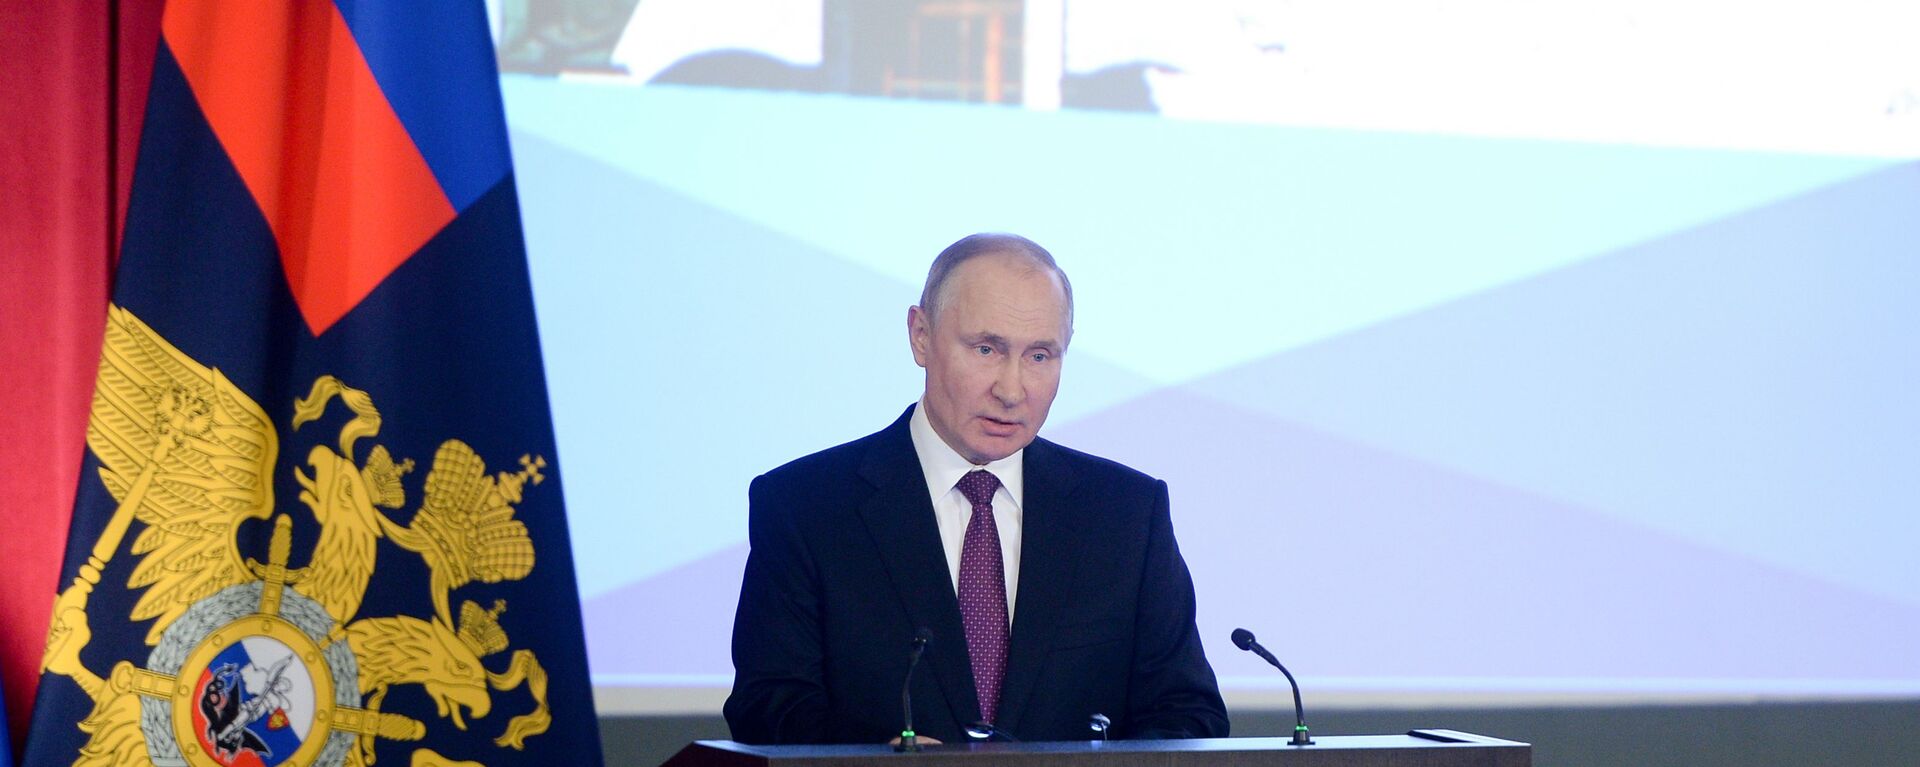 الرئيس الروسي فلاديمير بوتين، خلال الاجتماع السنوي، في وزارة الدفاع الروسية، 3 مارس 2021 - سبوتنيك عربي, 1920, 18.03.2021